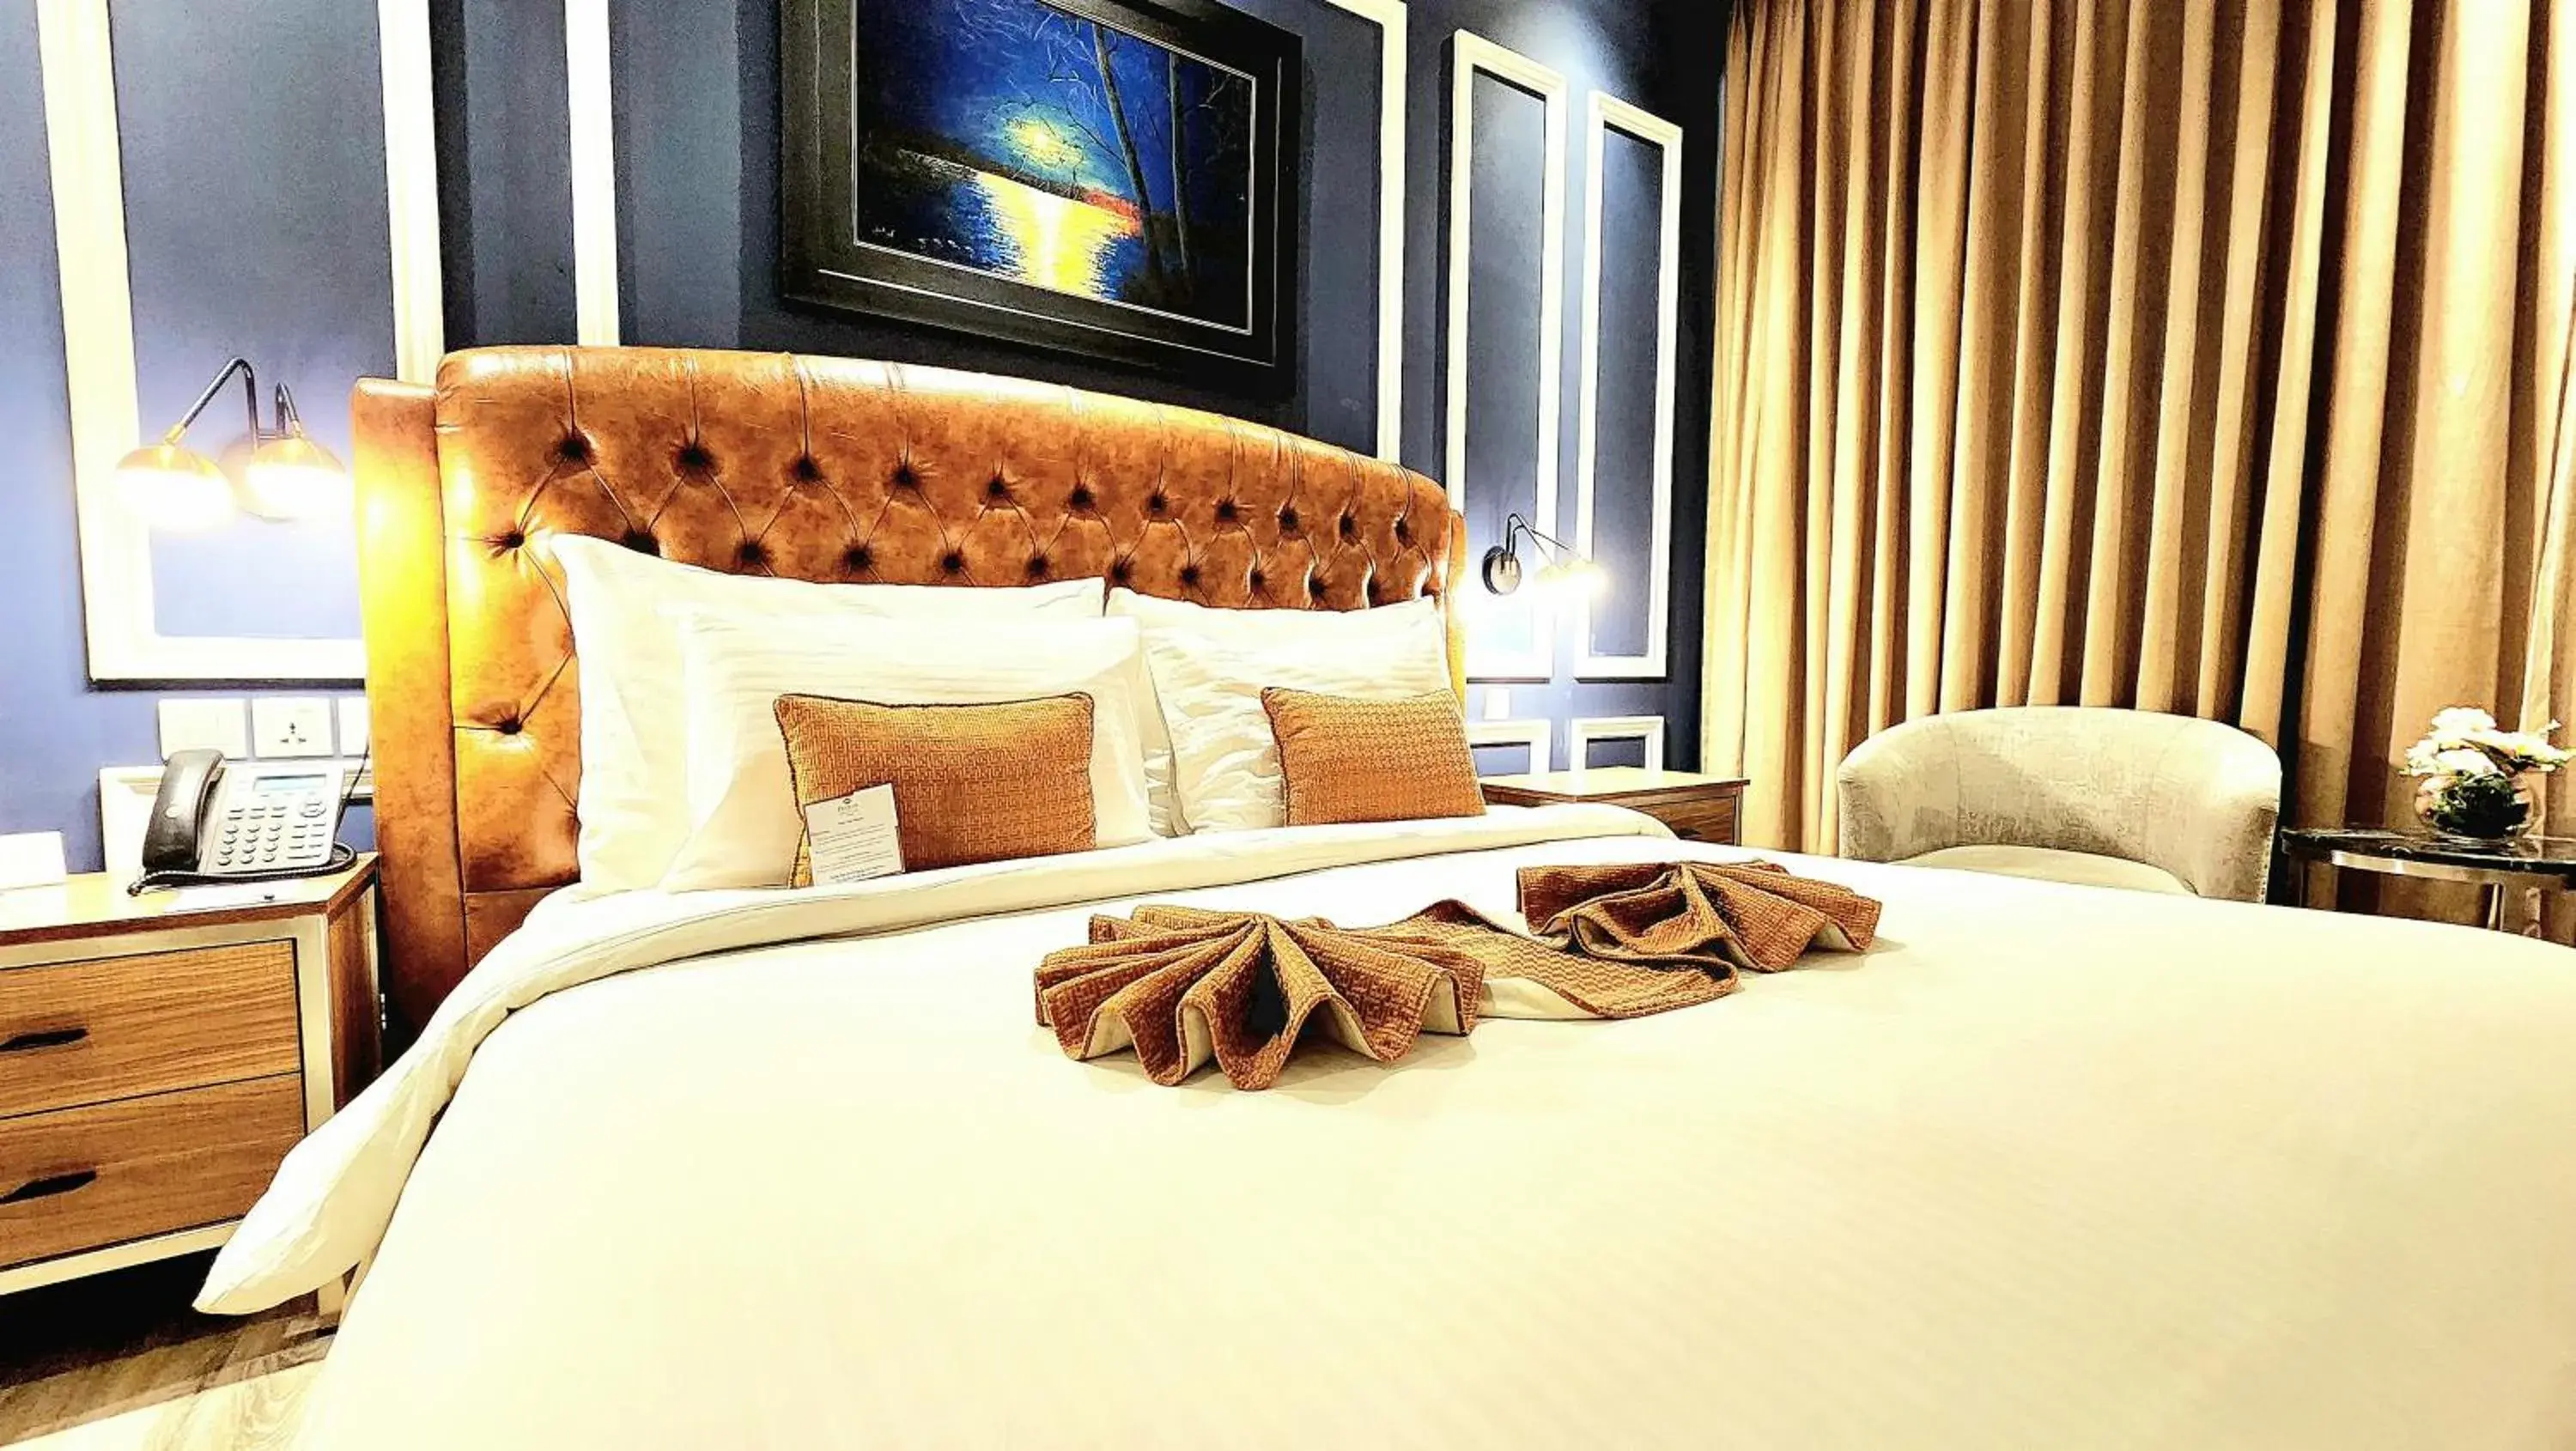 Bed in Best Western Premier Hotel Gulberg Lahore